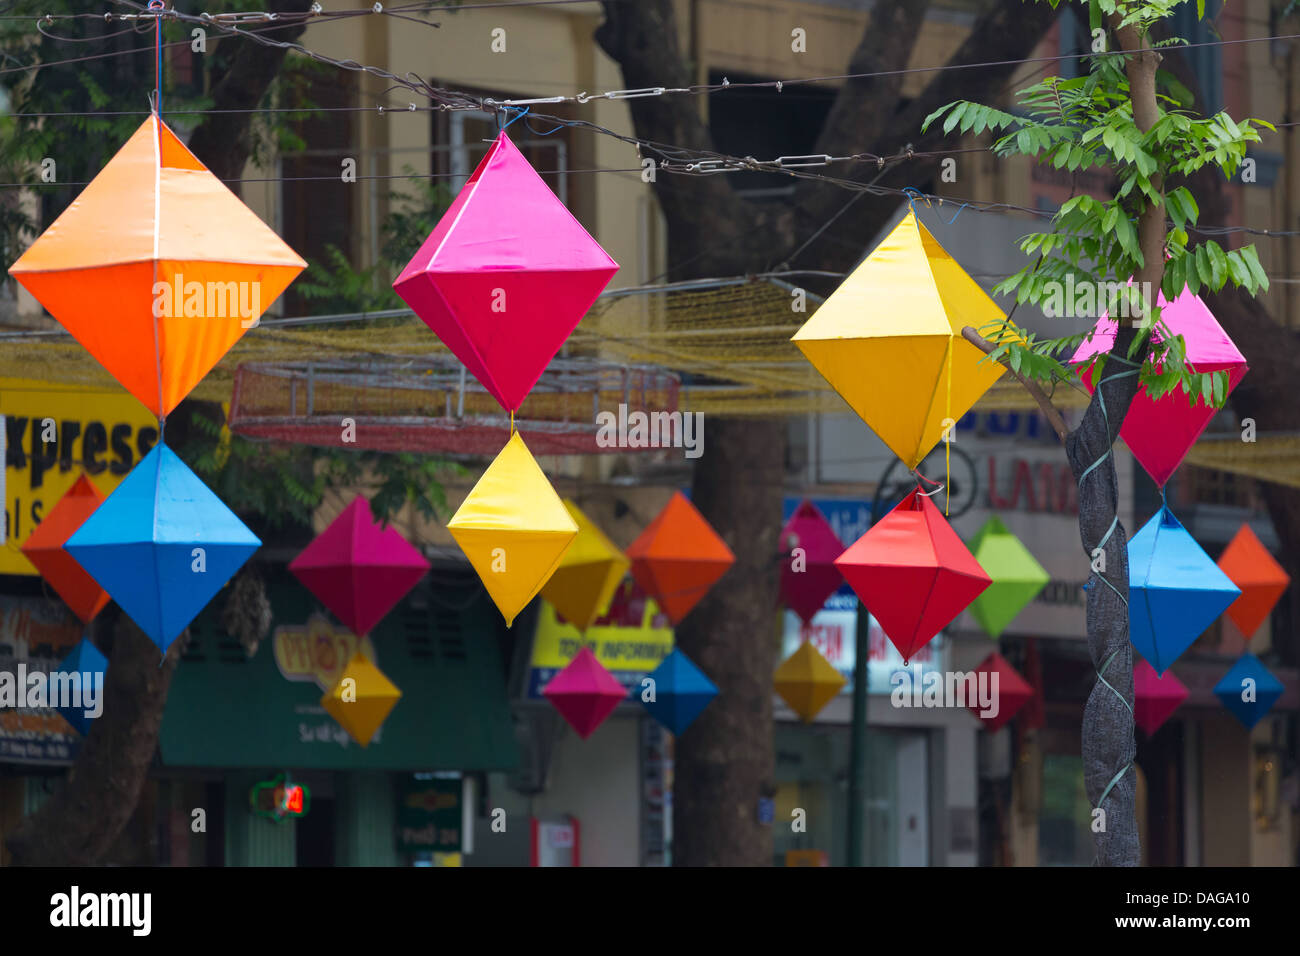 Lanterne chinoise dans les rues de Hanoi, Vietnam Banque D'Images